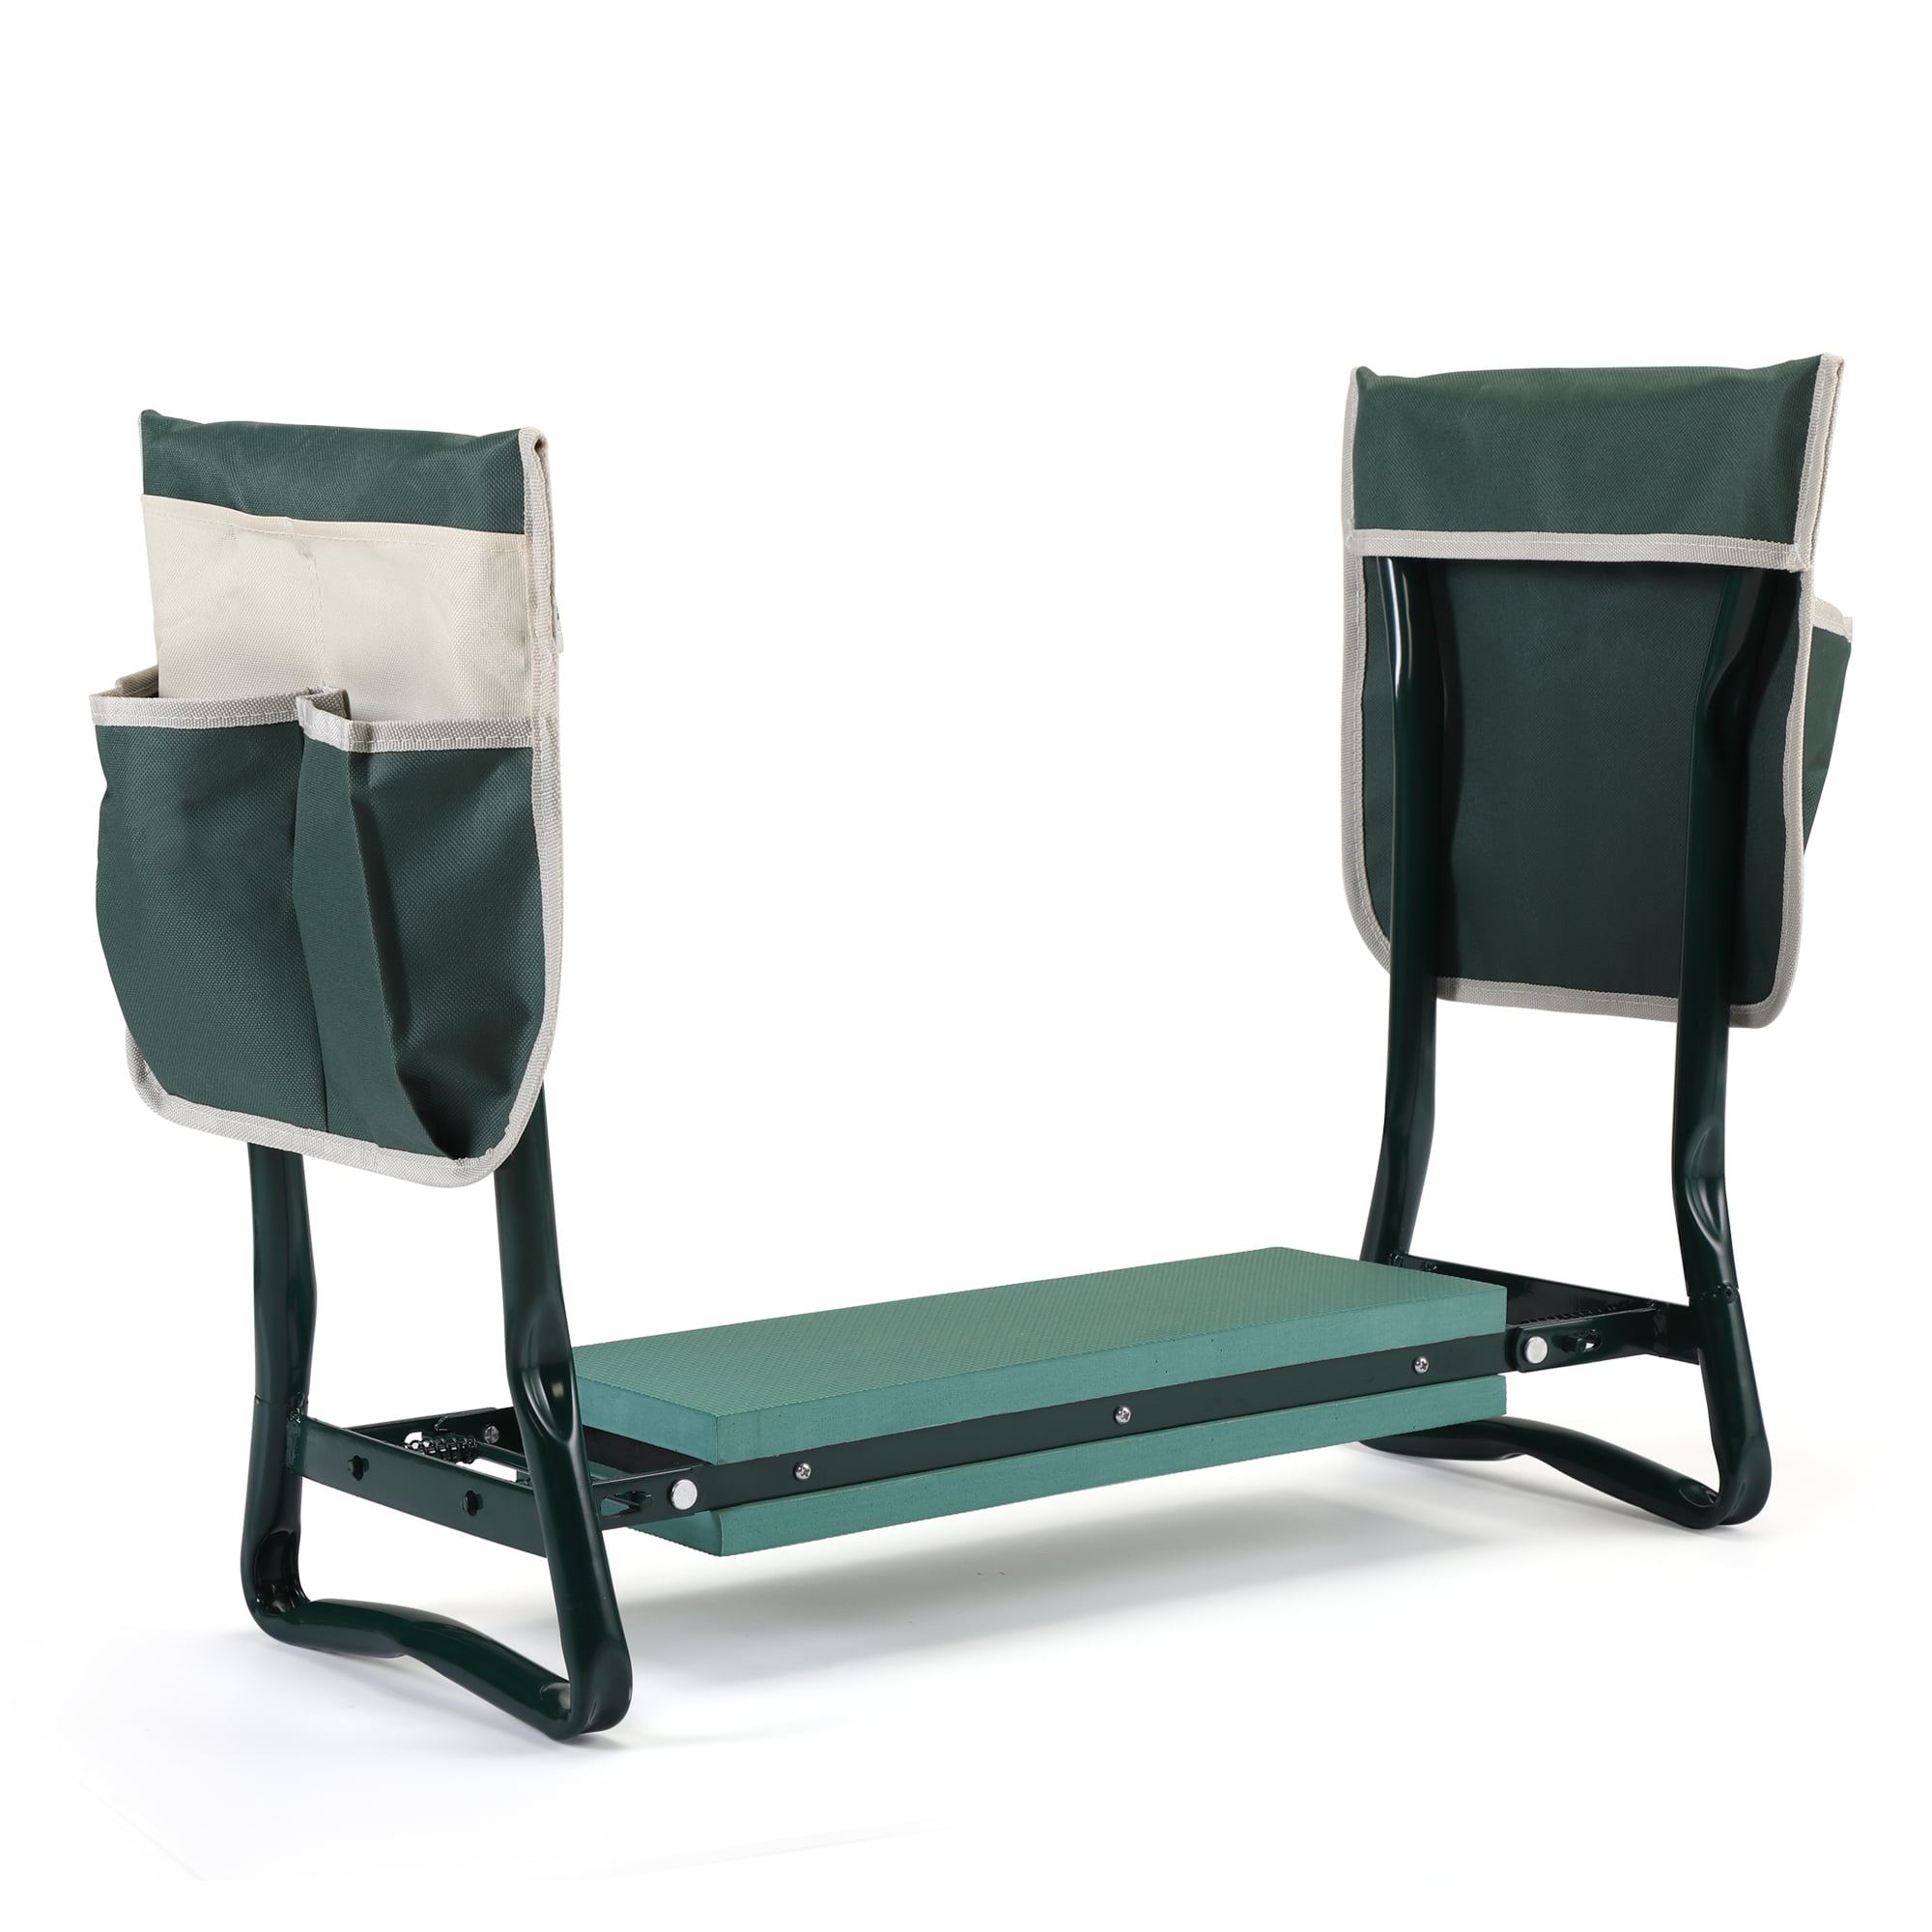 Garden Kneeler Seat Fold Portable Bench Kneeling Pad E3R7 and Outdoors Tool E0H8 